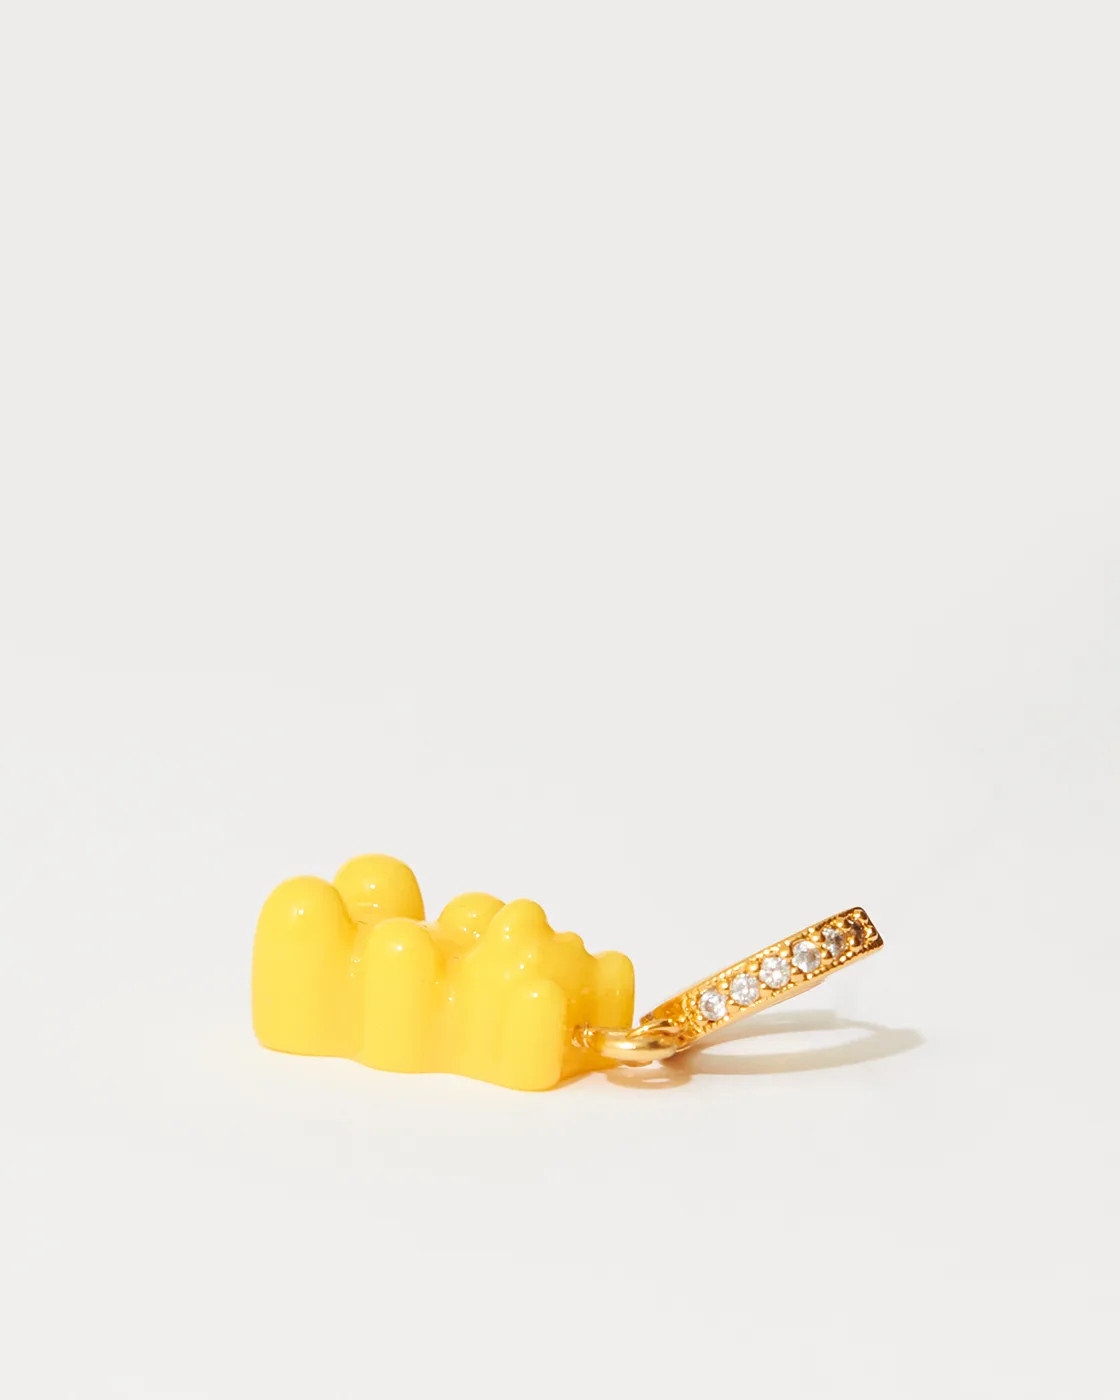 Nostalgie-Bär Vergoldeter Single Zirkonia-Ohrring aus Kunstharz - NYC Taxi gelb